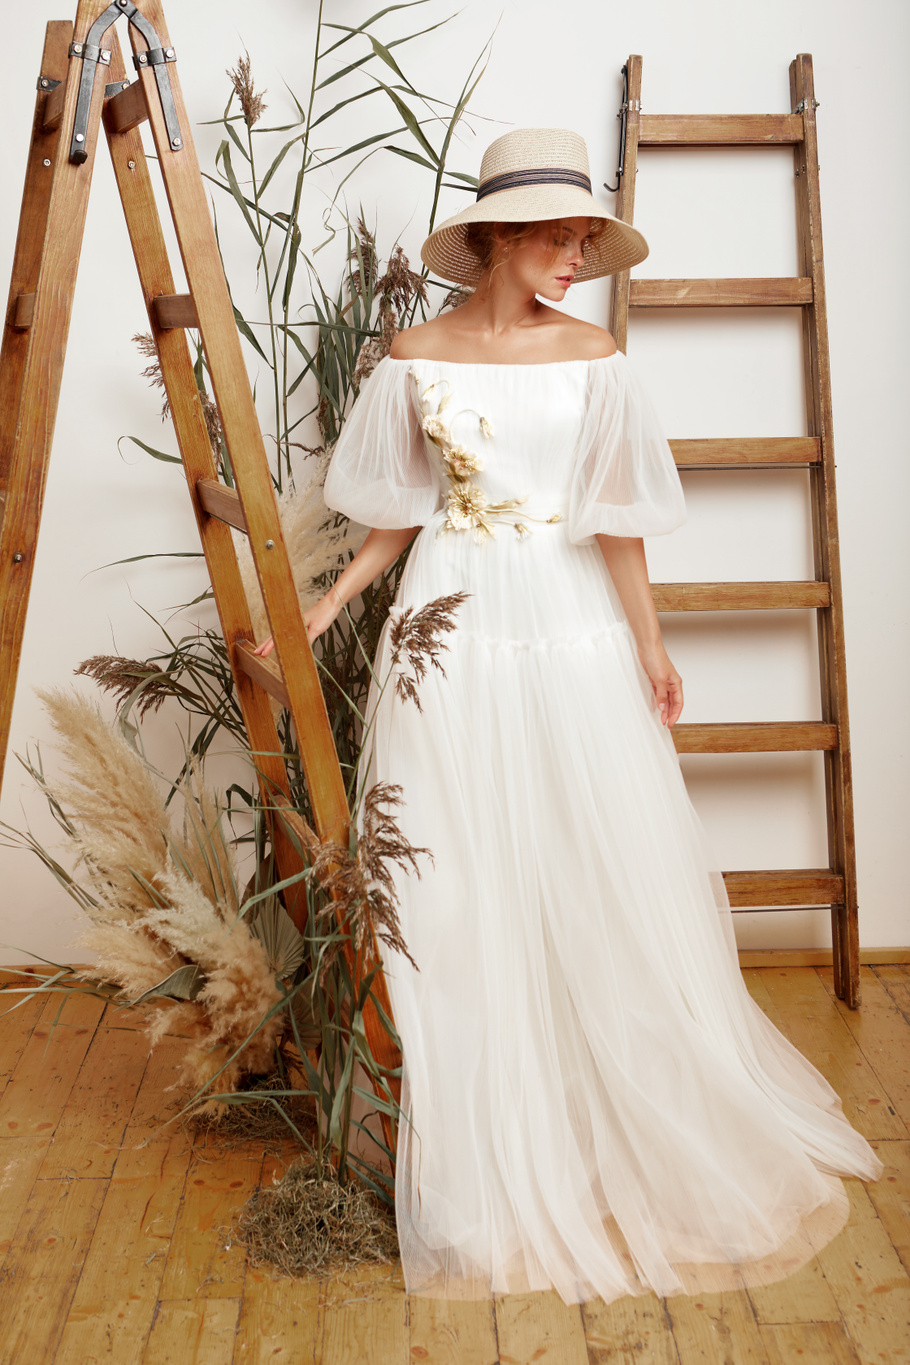 Купить свадебное платье «Ясмин» Мэрри Марк из коллекции 2020 года в Екатеринбурге